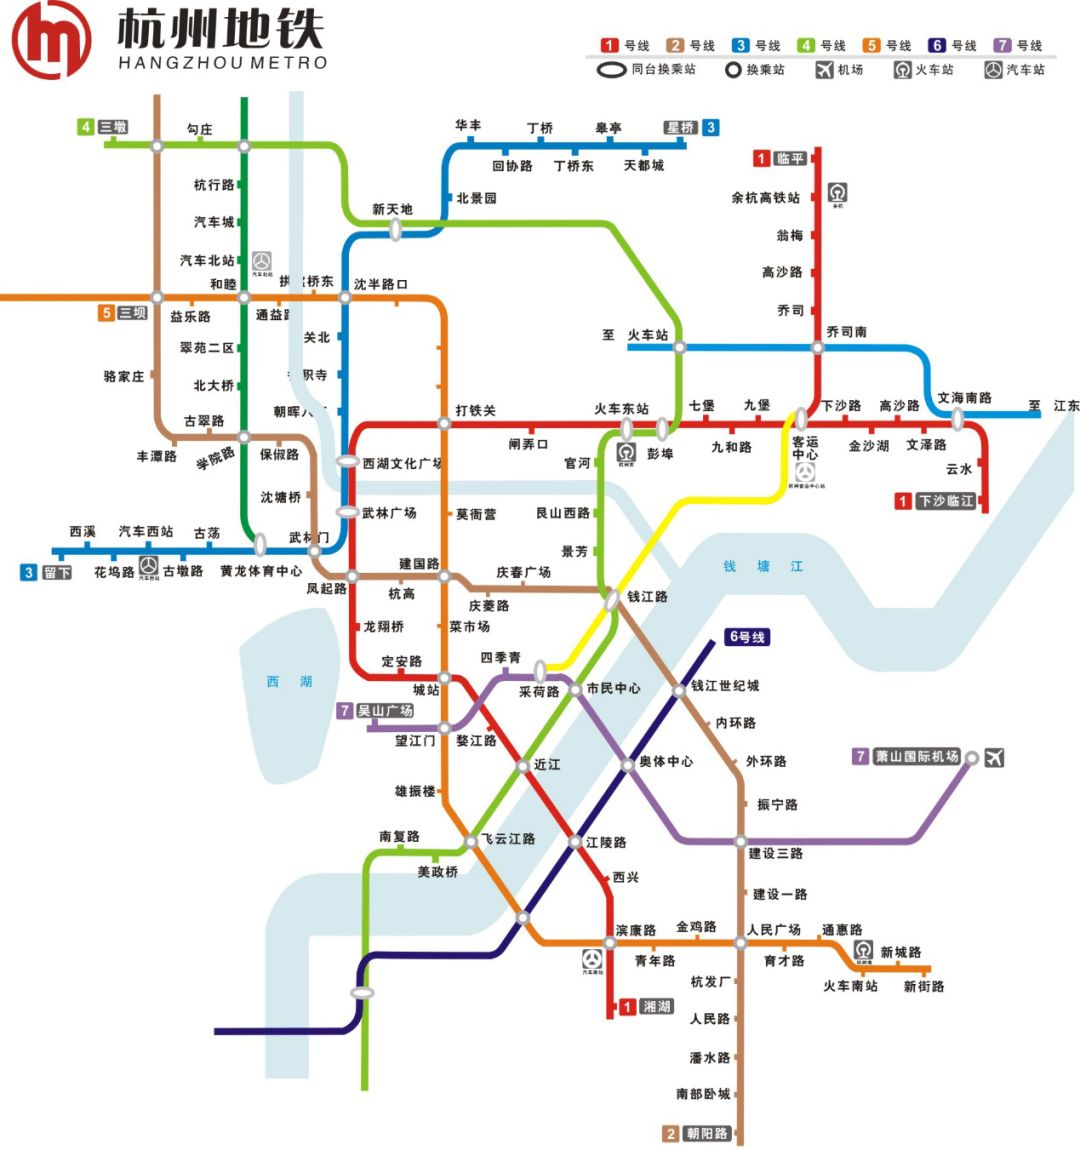 杭州地铁首条线路1号线正式开通 截至2018年1月 杭州地铁运营线路共3